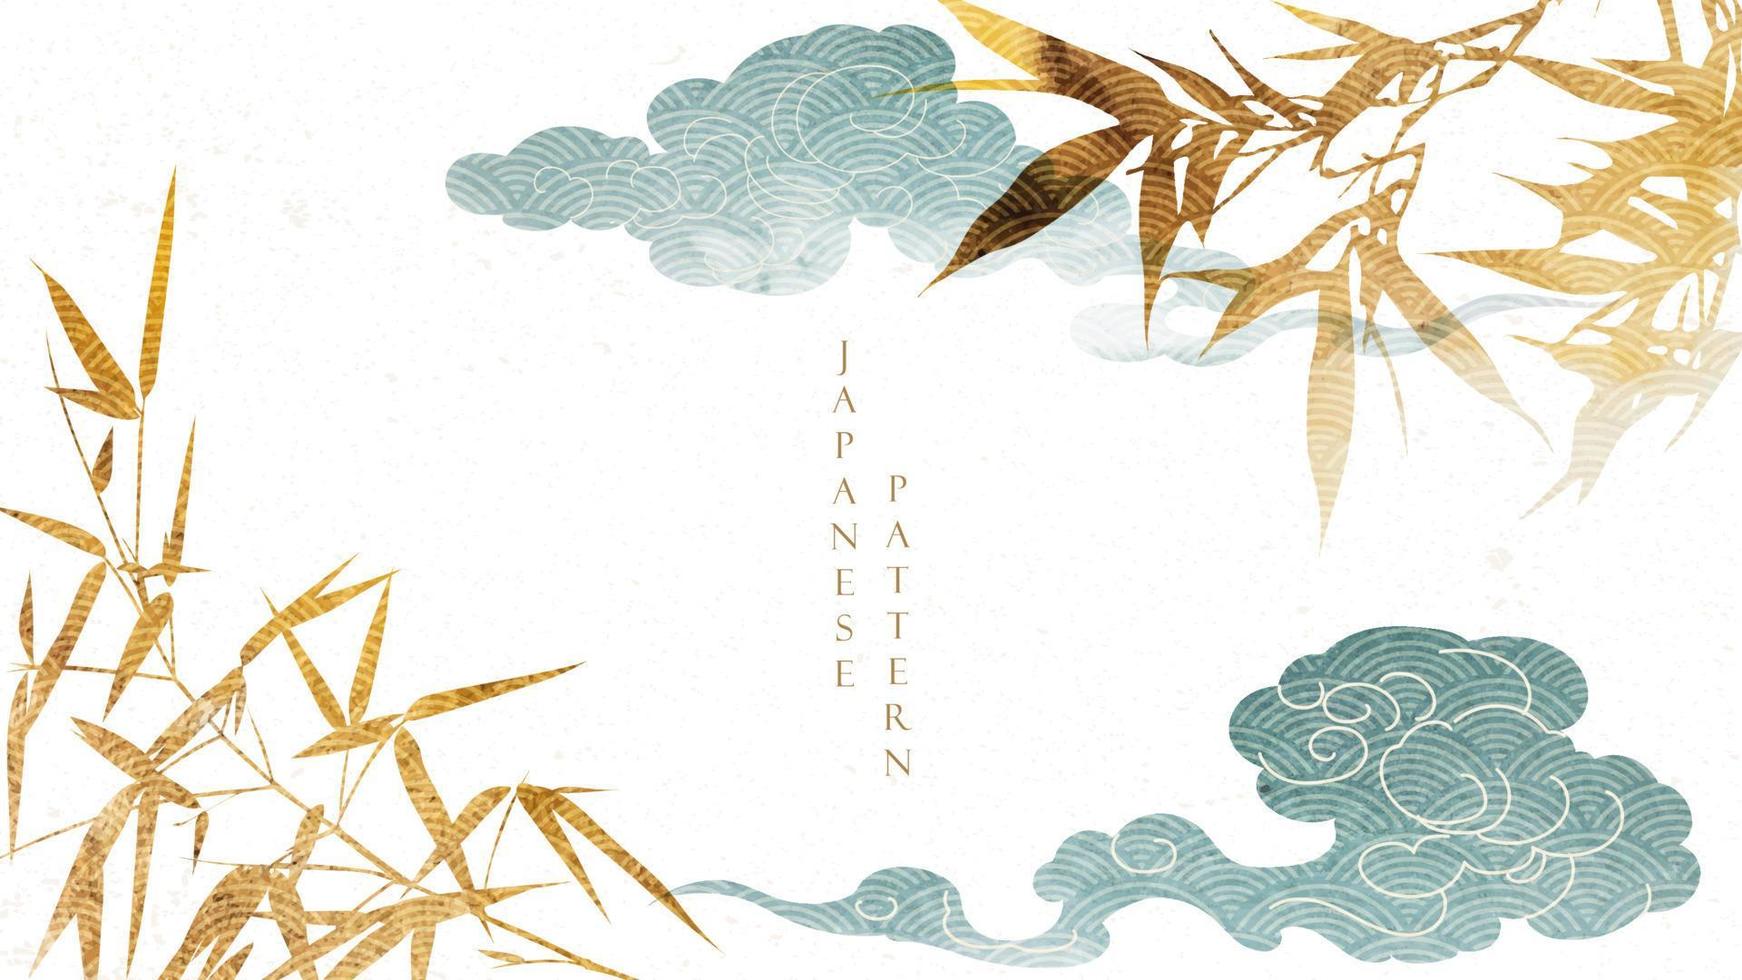 fond naturel avec vecteur de motif japonais. modèle d'éléments en bambou et nuage avec texture aquarelle. fond d'écran d'arts abstraits dans un style vintage.